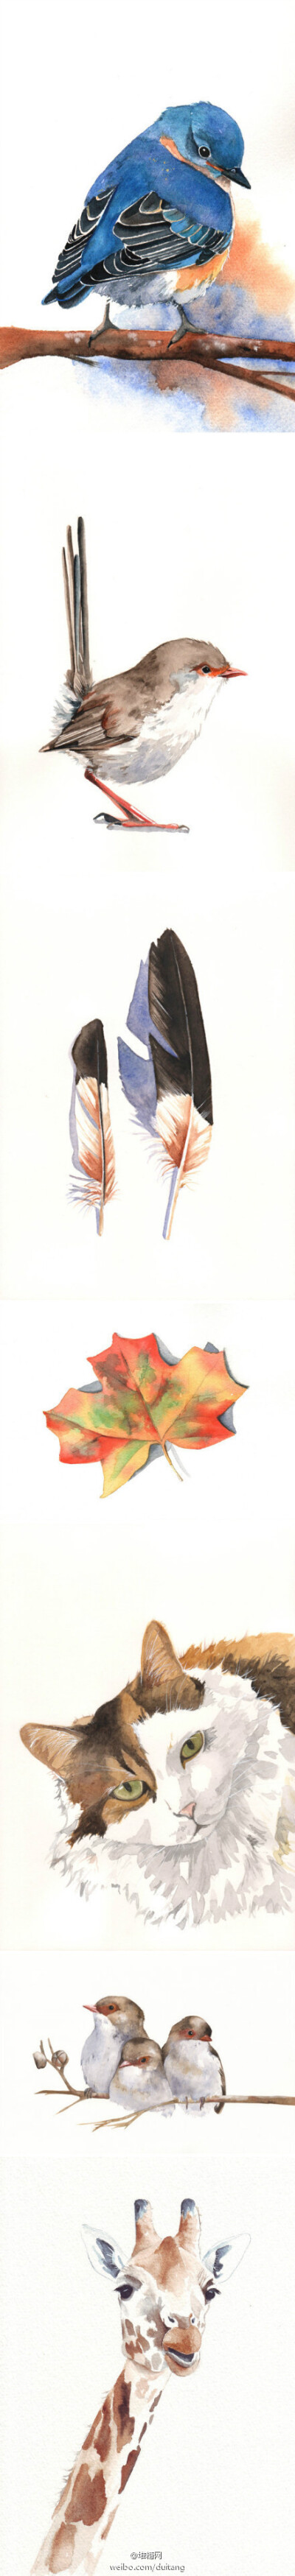 「万物有灵且美」澳洲水彩画家Louise De Masi笔下灵气动人的动物，一片树叶、一根羽毛，透出淡淡的大自然情怀